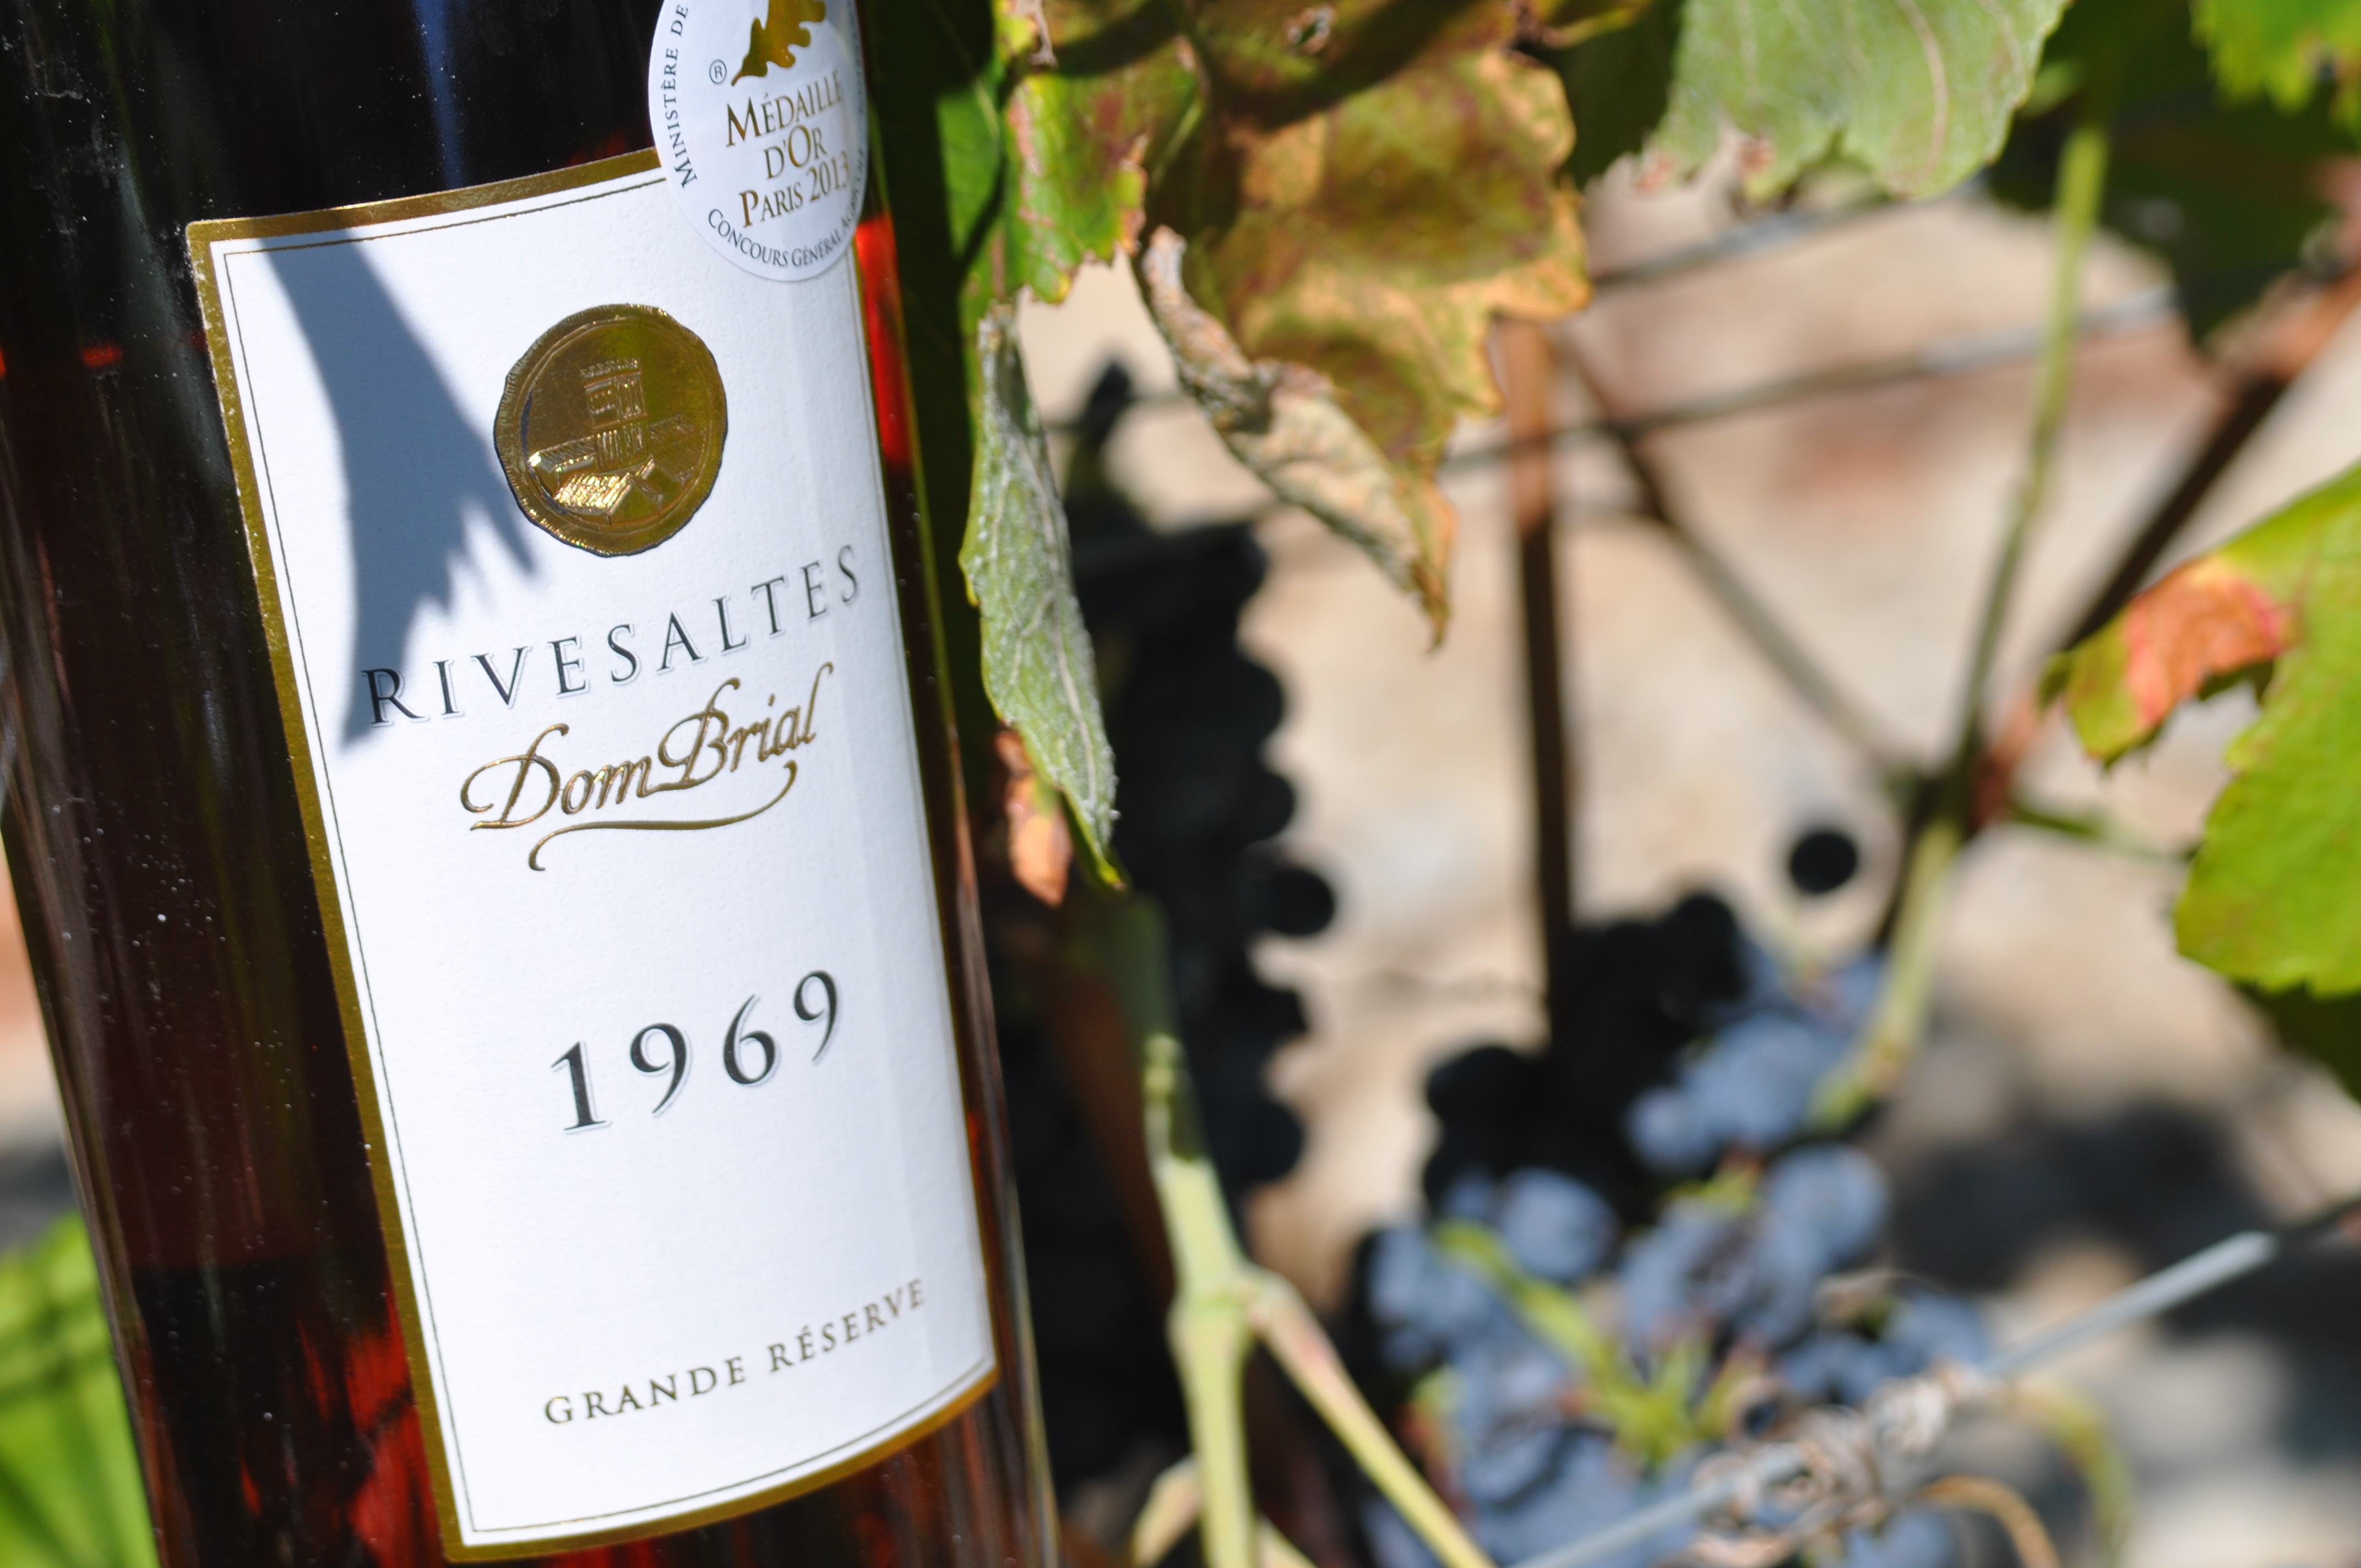 Une des bouteilles références des Vins Doux Naturels du Roussillon, le Rivesaltes Grande Réserve 1969 !